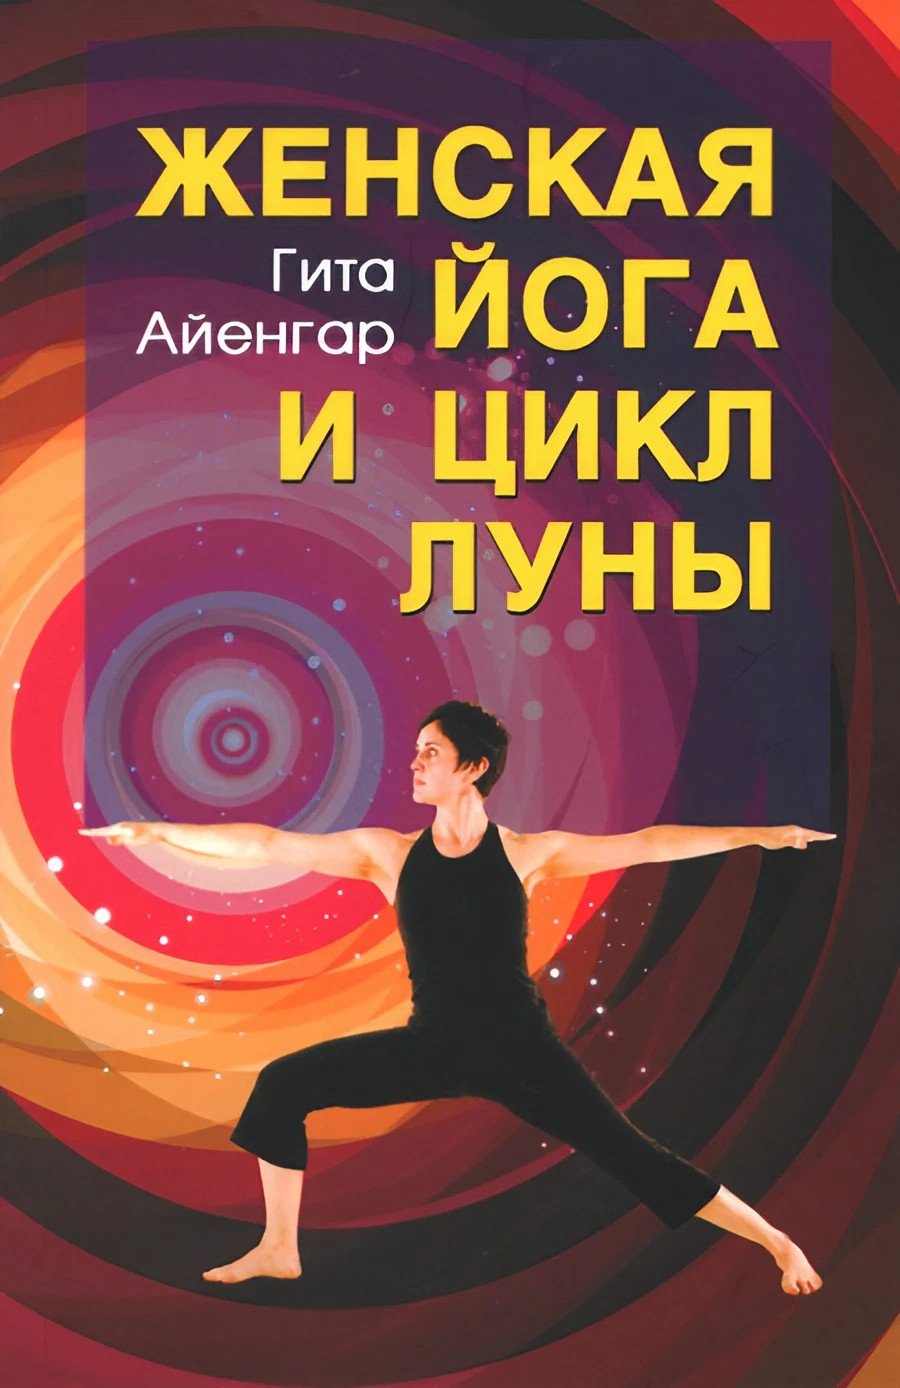 Купить книгу Женская йога и цикл Луны (мягкий переплет). Месячный комплекс асан для женщин Айенгар Гита в интернет-магазине Ариаварта